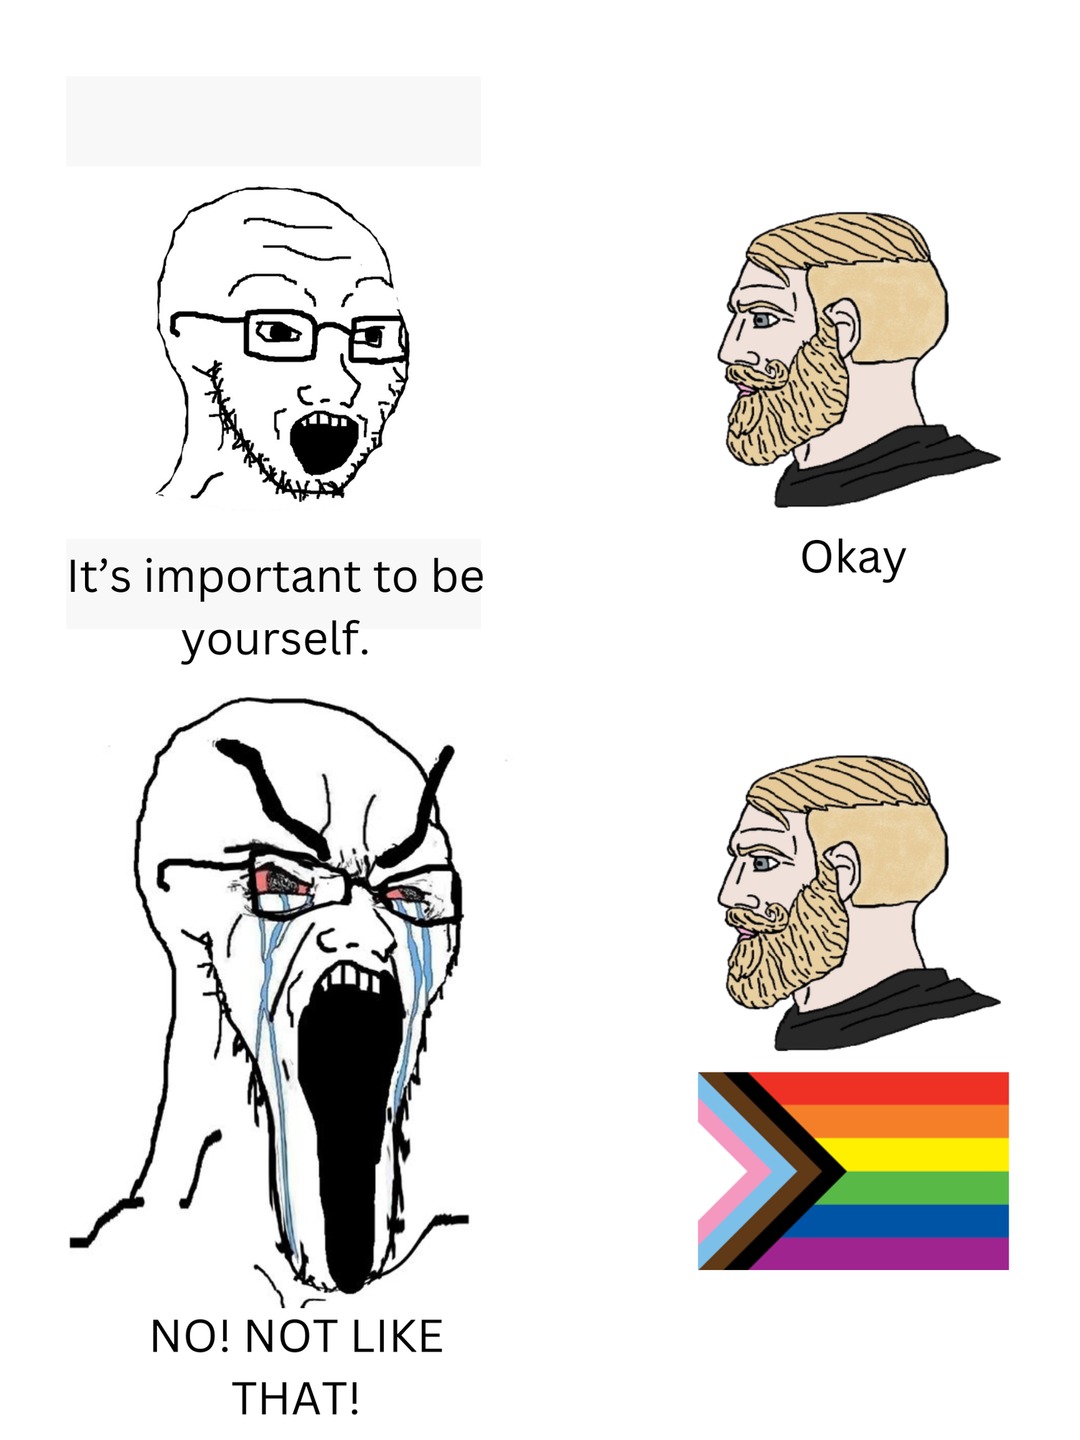 It's okay to be gay. - meme